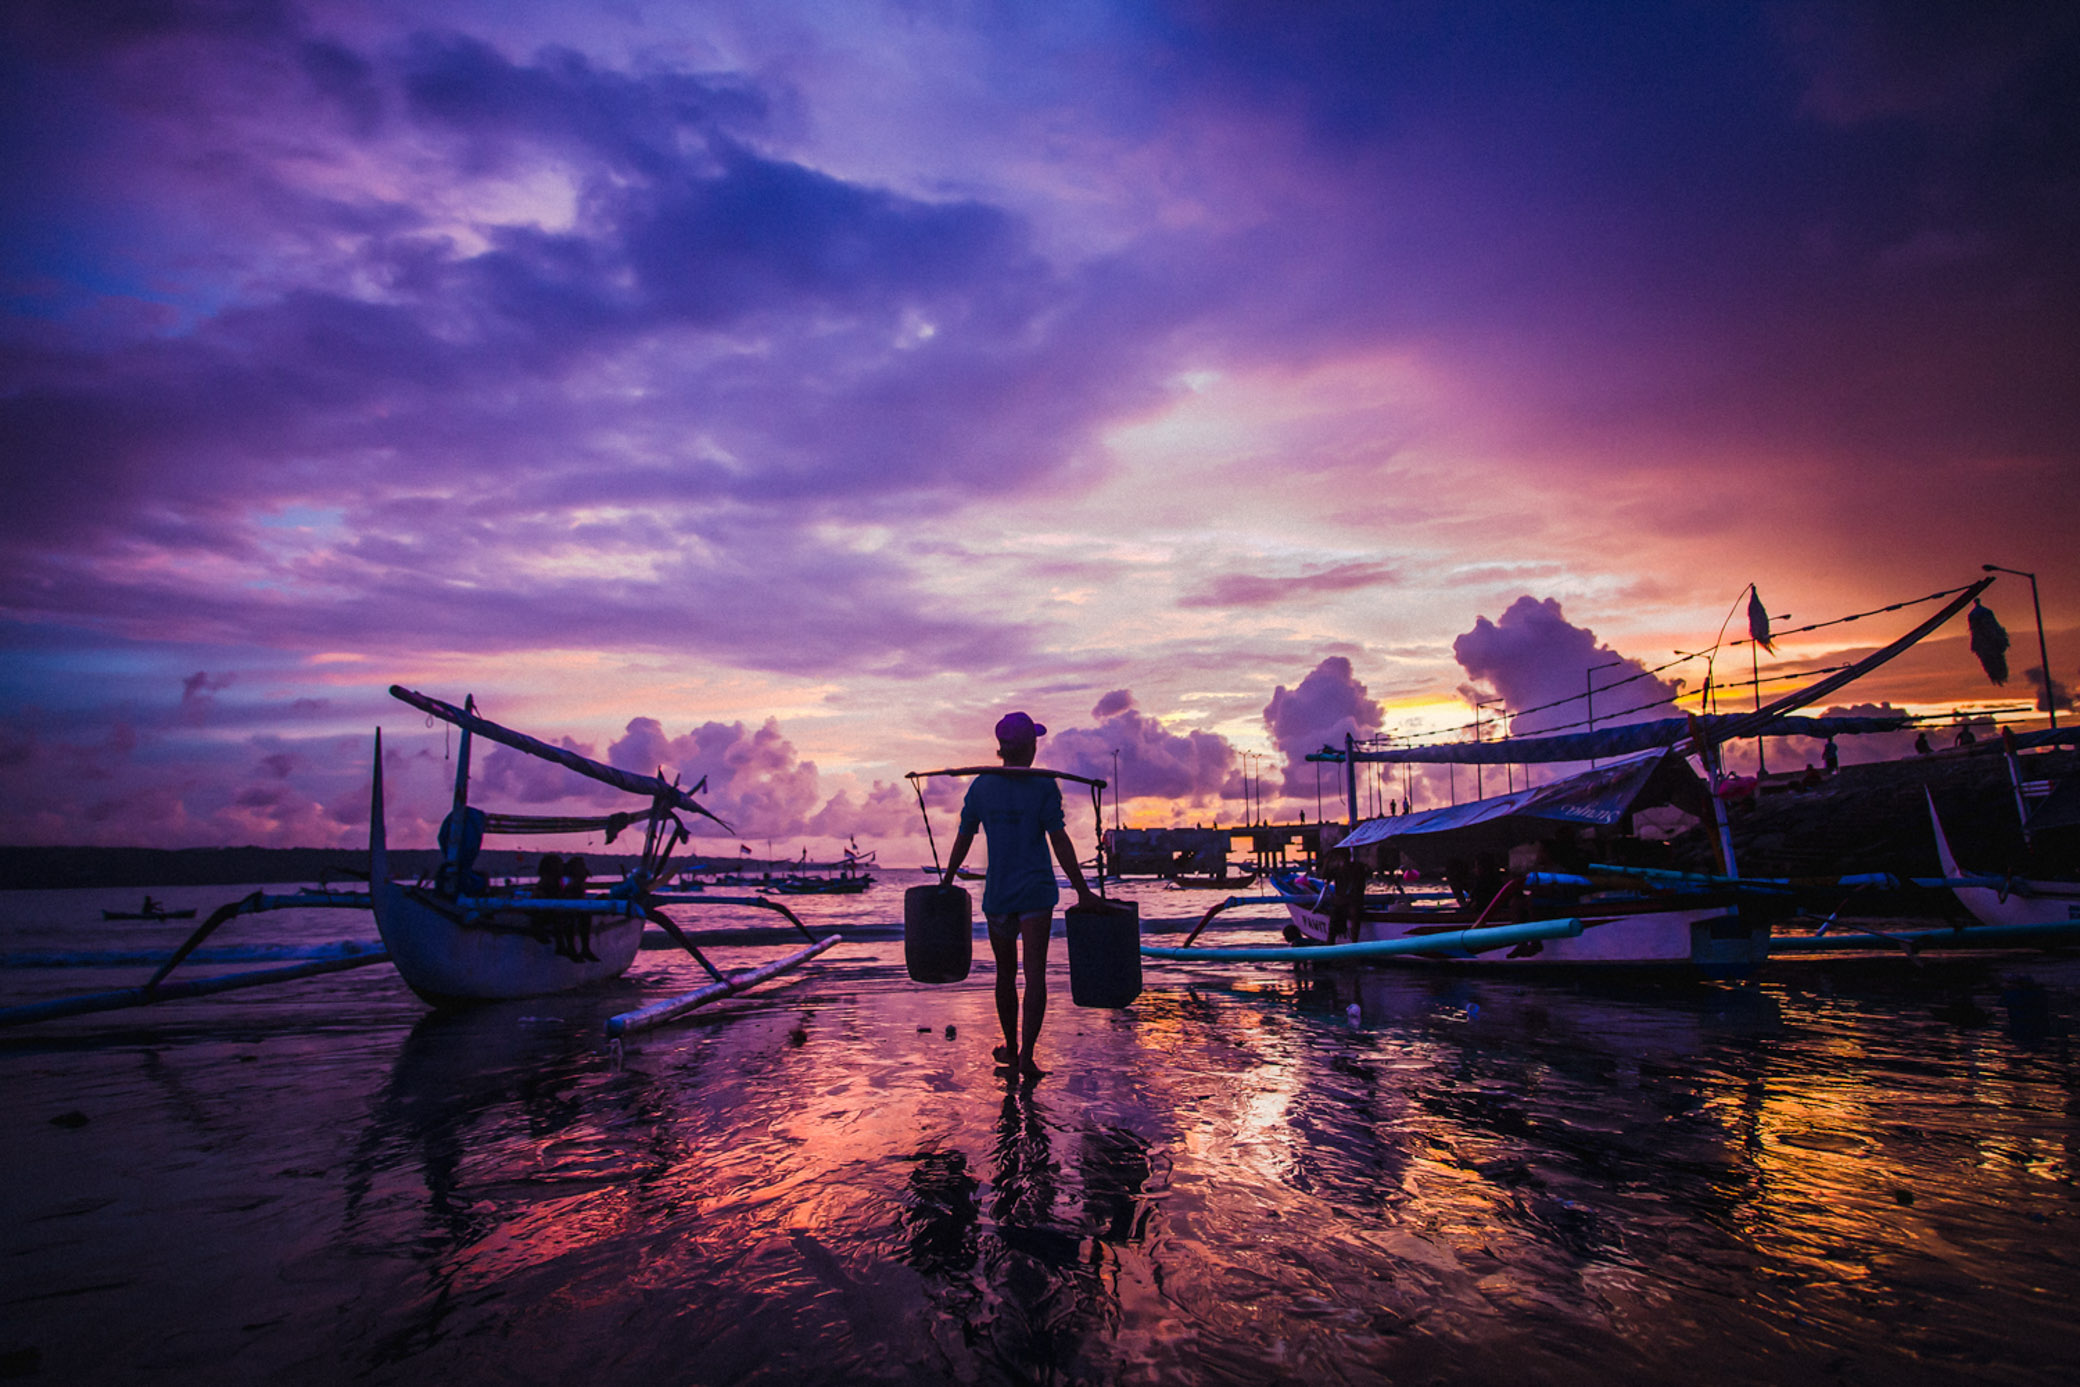 На побережье Джимбарана рыбаки ловят рыбу и различные морепродукты на Бали. Закат, рыбацкие лодки.